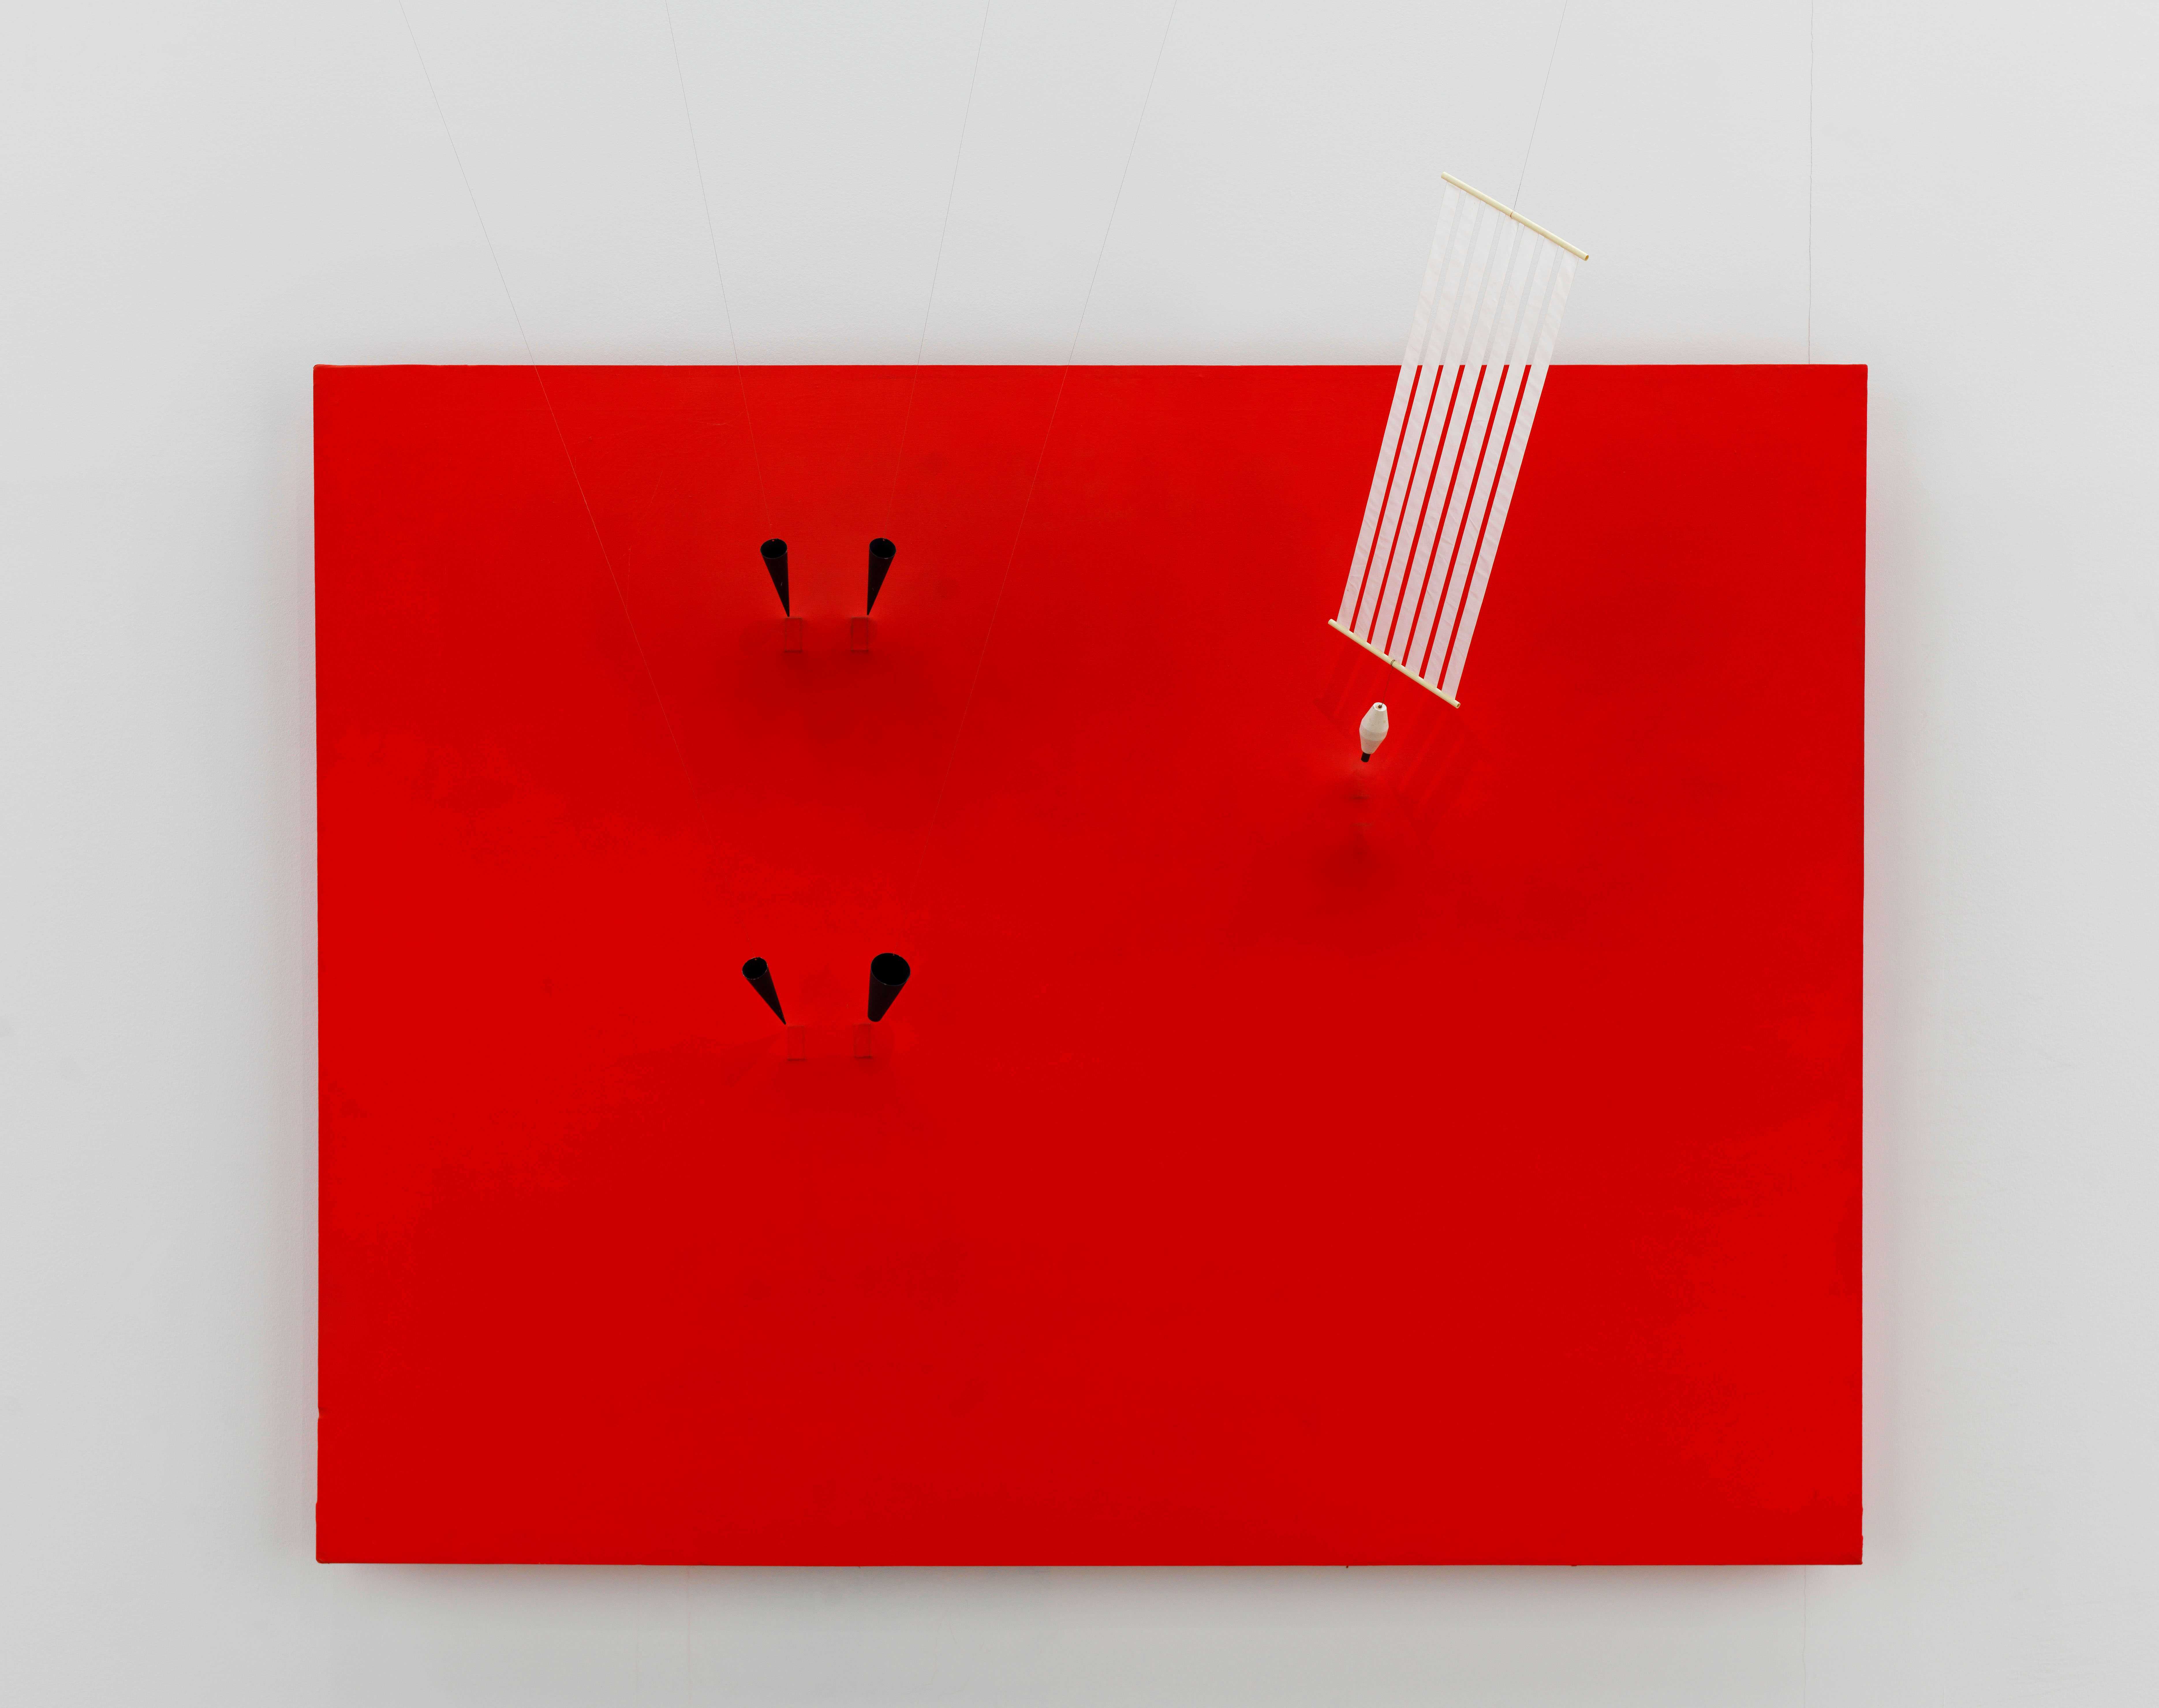 Magnetic Wall 9 (Red) 1961. Centre Pompidou, Musée national d’art moderne – Centre de création industrielle, Paris © ADAGP, Paris and DACS, London 2019 Photo: Georges Meguerditchianntent.